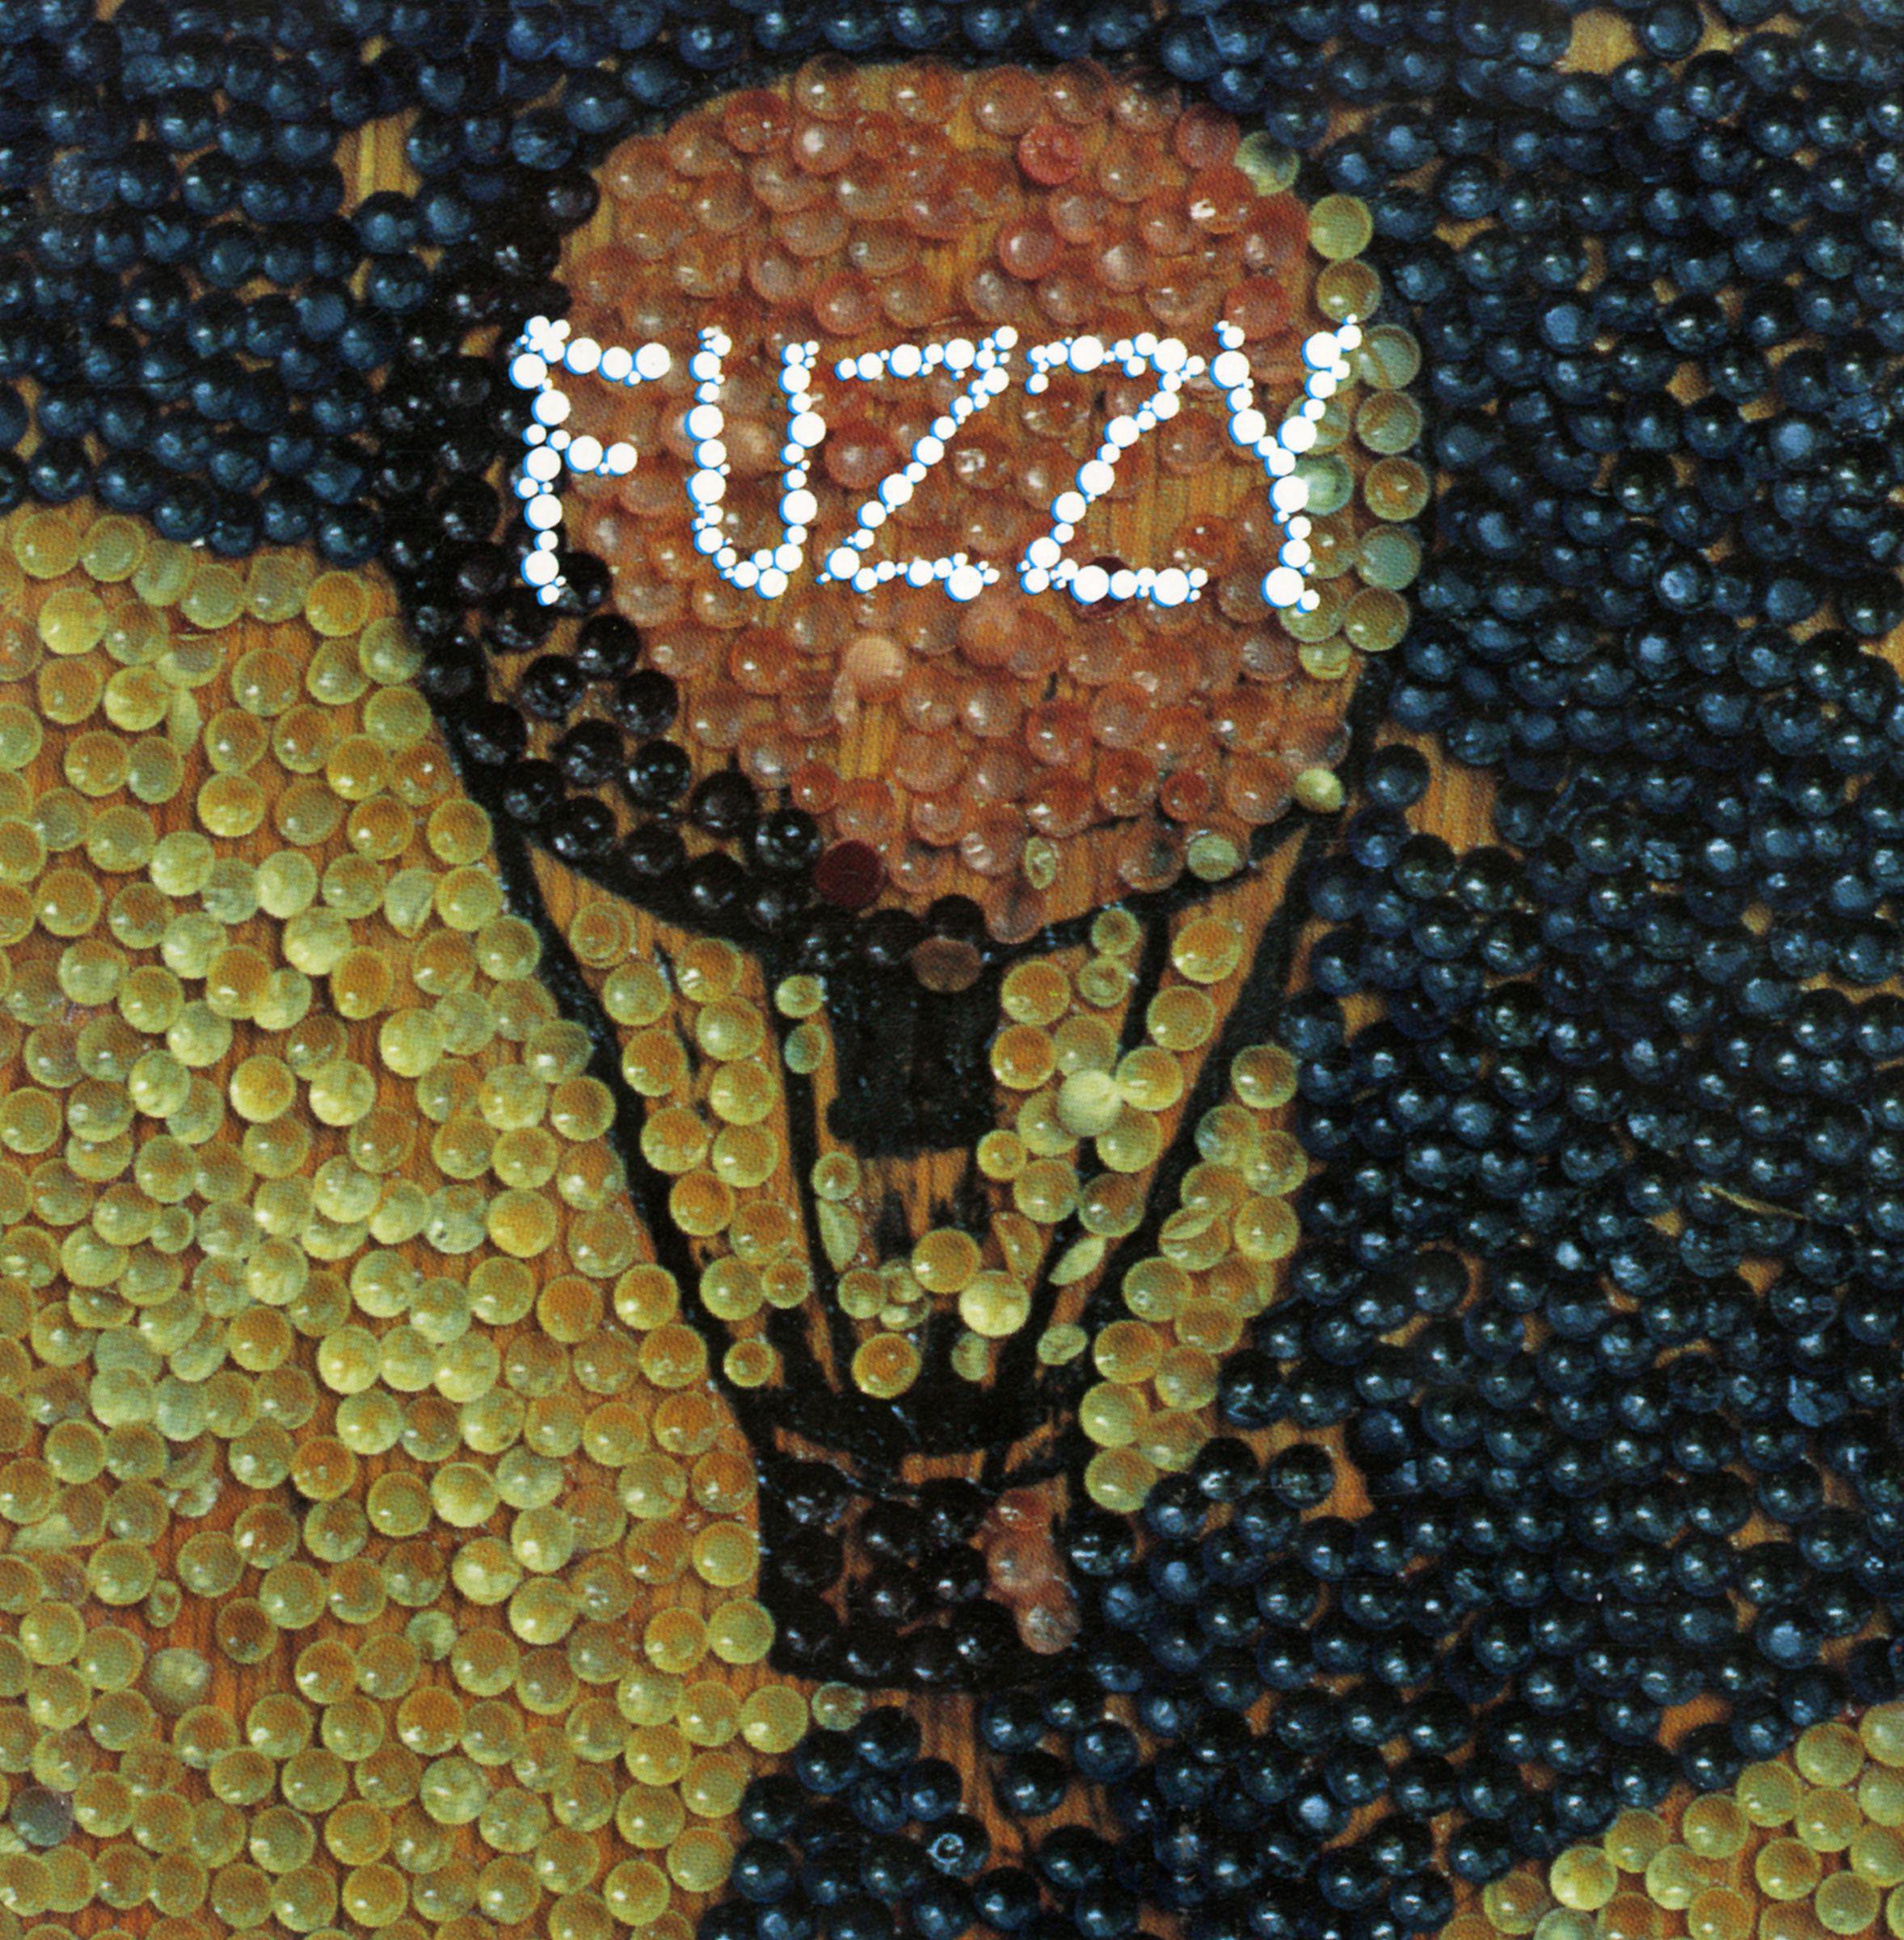 Постер альбома Fuzzy